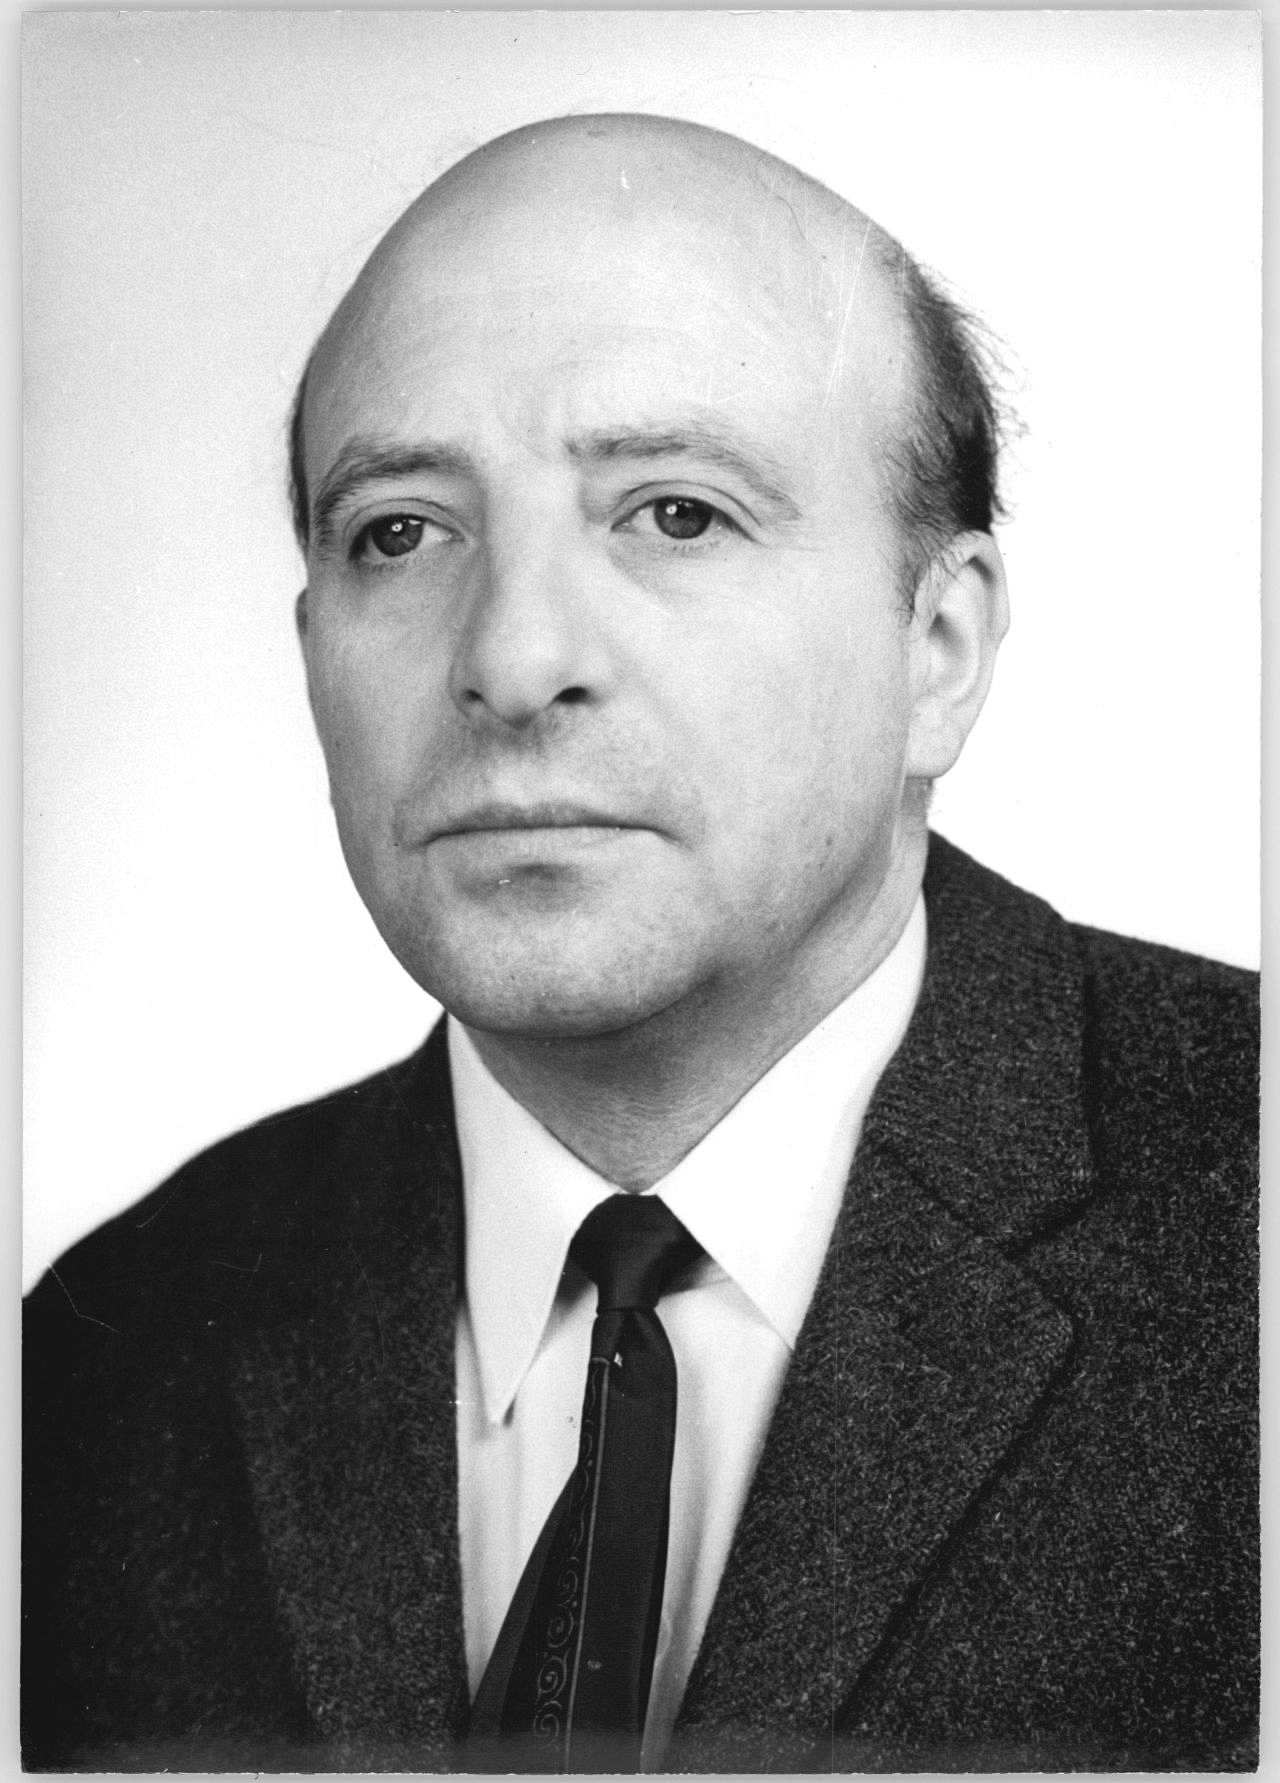 Porträtfoto des Theologen und Politikers (Bündnis 90/Die Grünen) Wolfgang Ullmann, 1990.